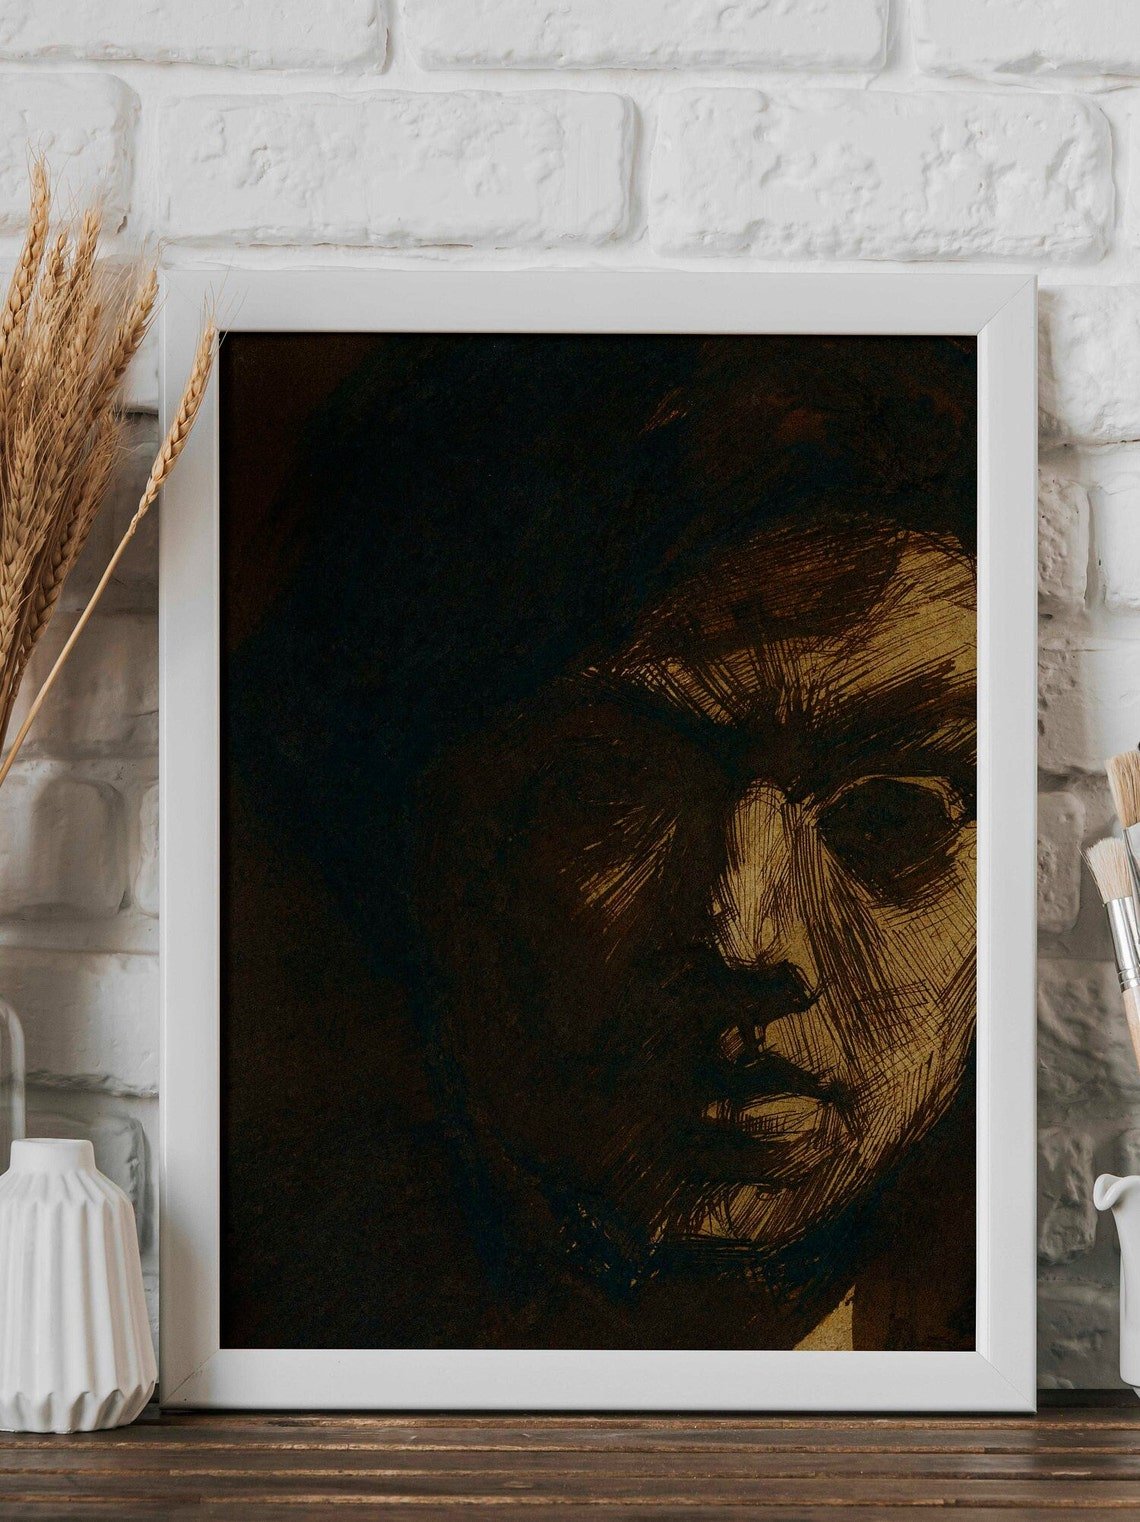 JAN TOOROP - Self–Portrait Of The Painter Jan Toorop